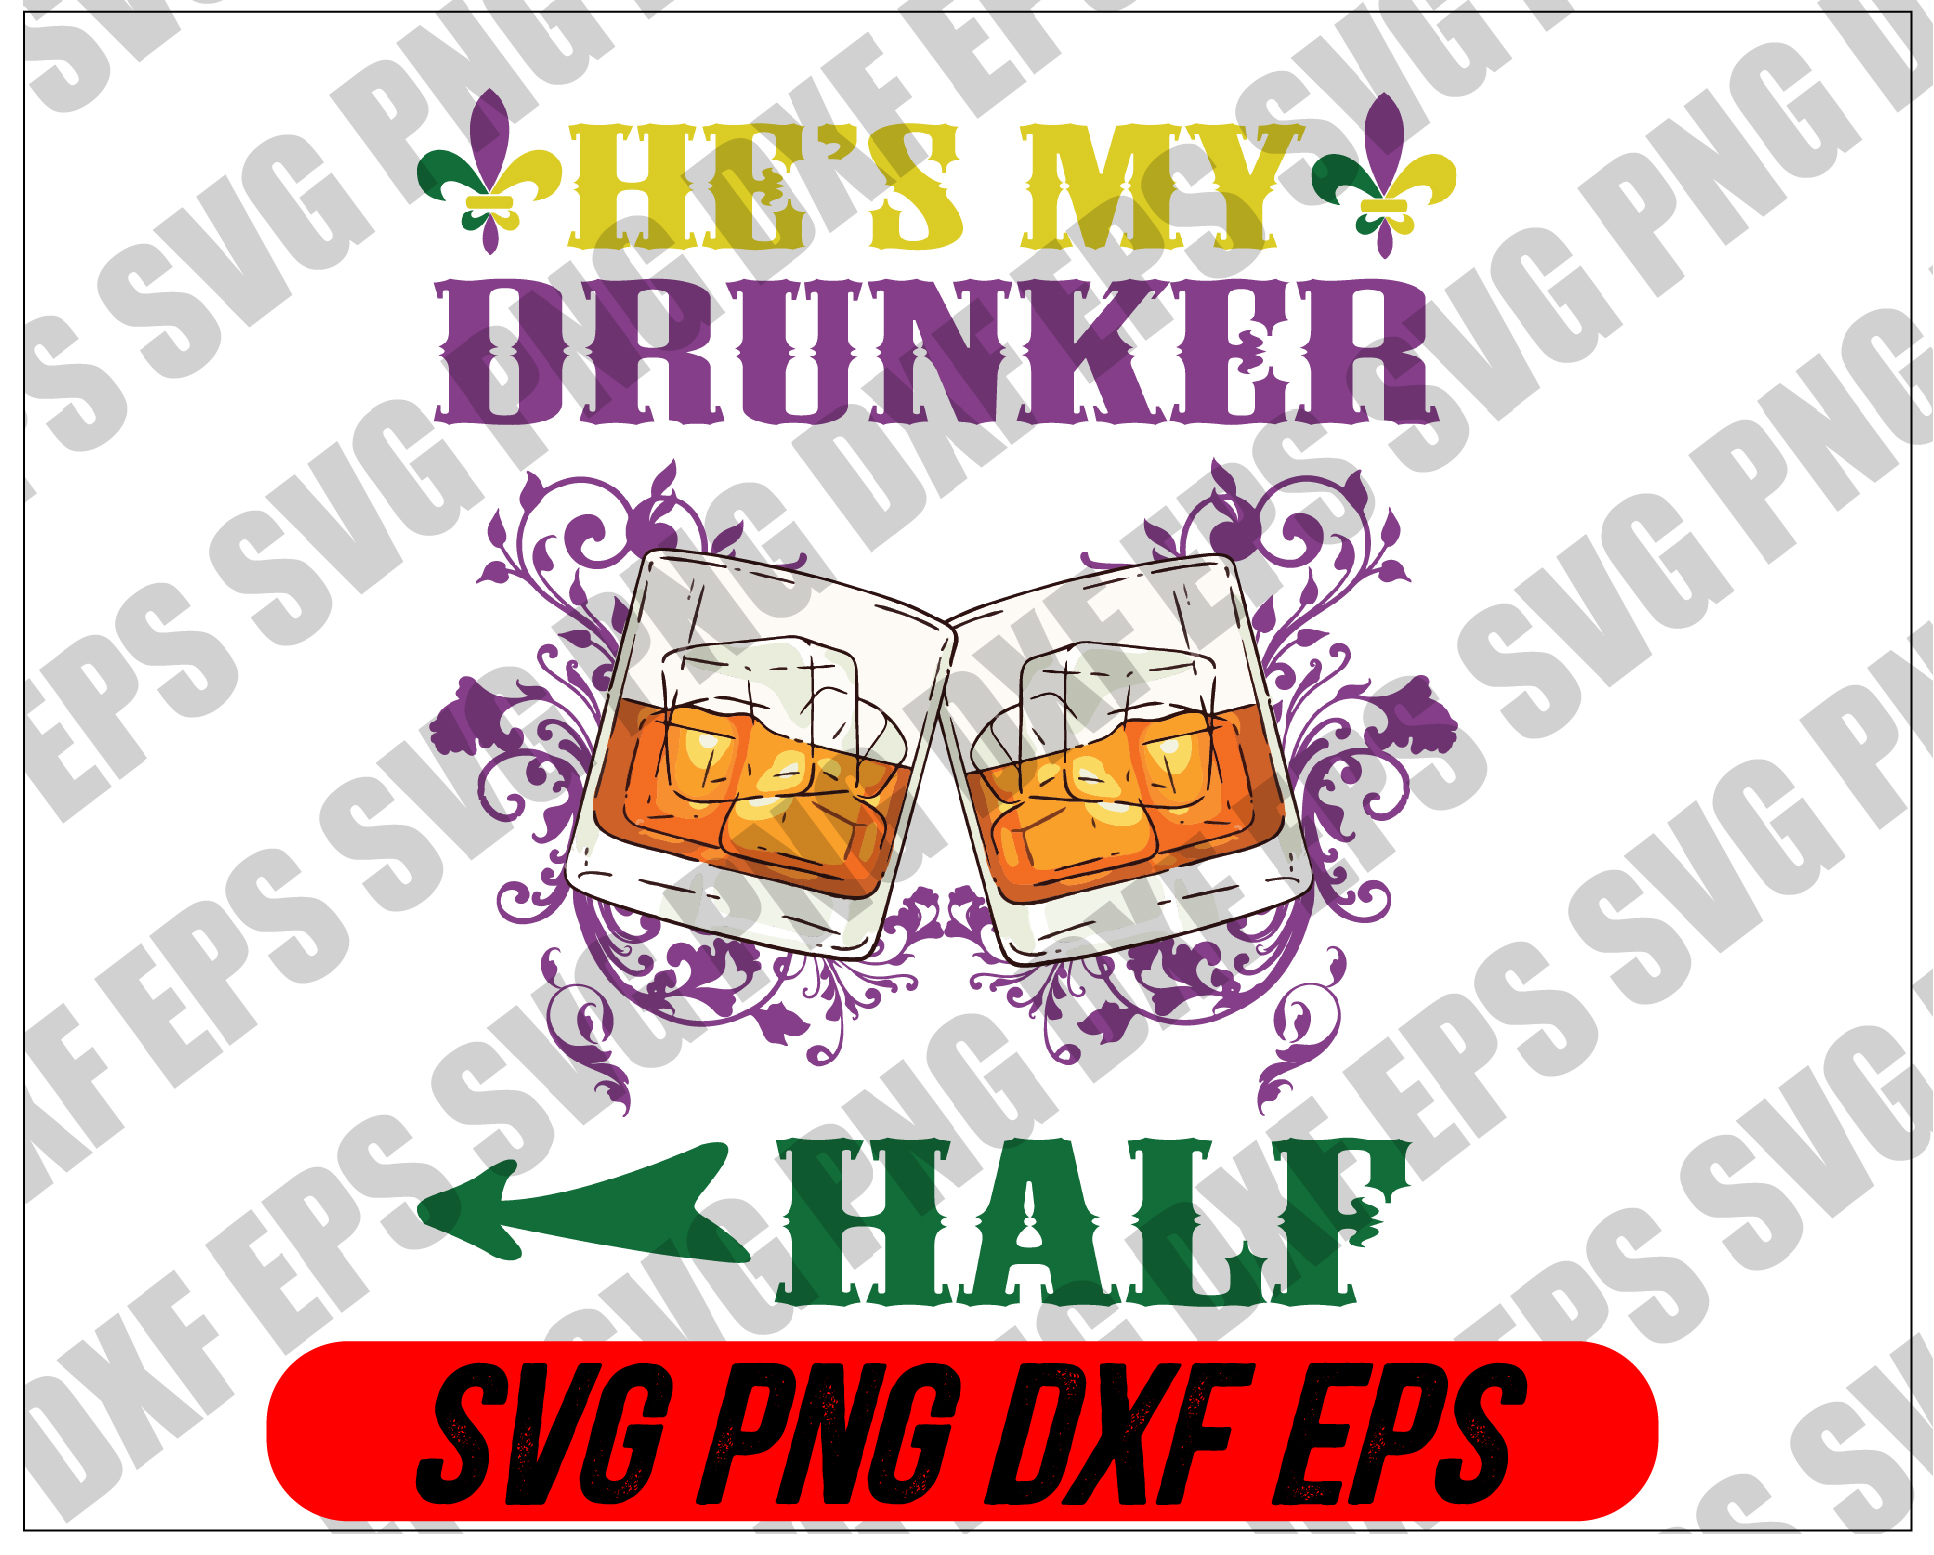 file wtm 02 3 Mardi Gras SVG - He's my drunker half svg, png, dxf, eps digital download